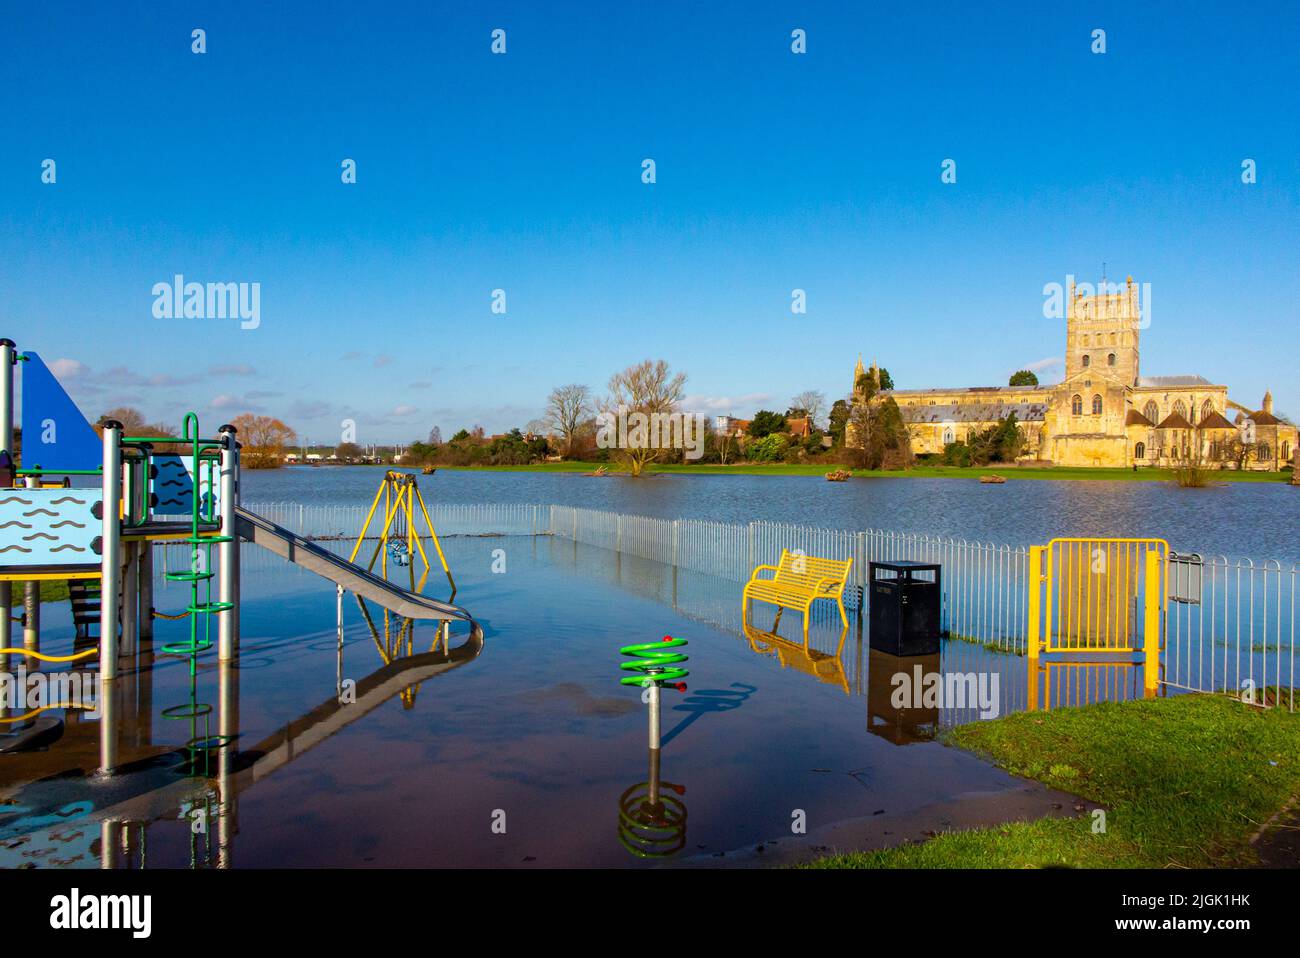 Grave alluvione a Tewkesbury Gloucestershire Inghilterra UK nel punto in cui i fiumi Severn e Avon si incontrano fotografati nel febbraio 2022. Foto Stock